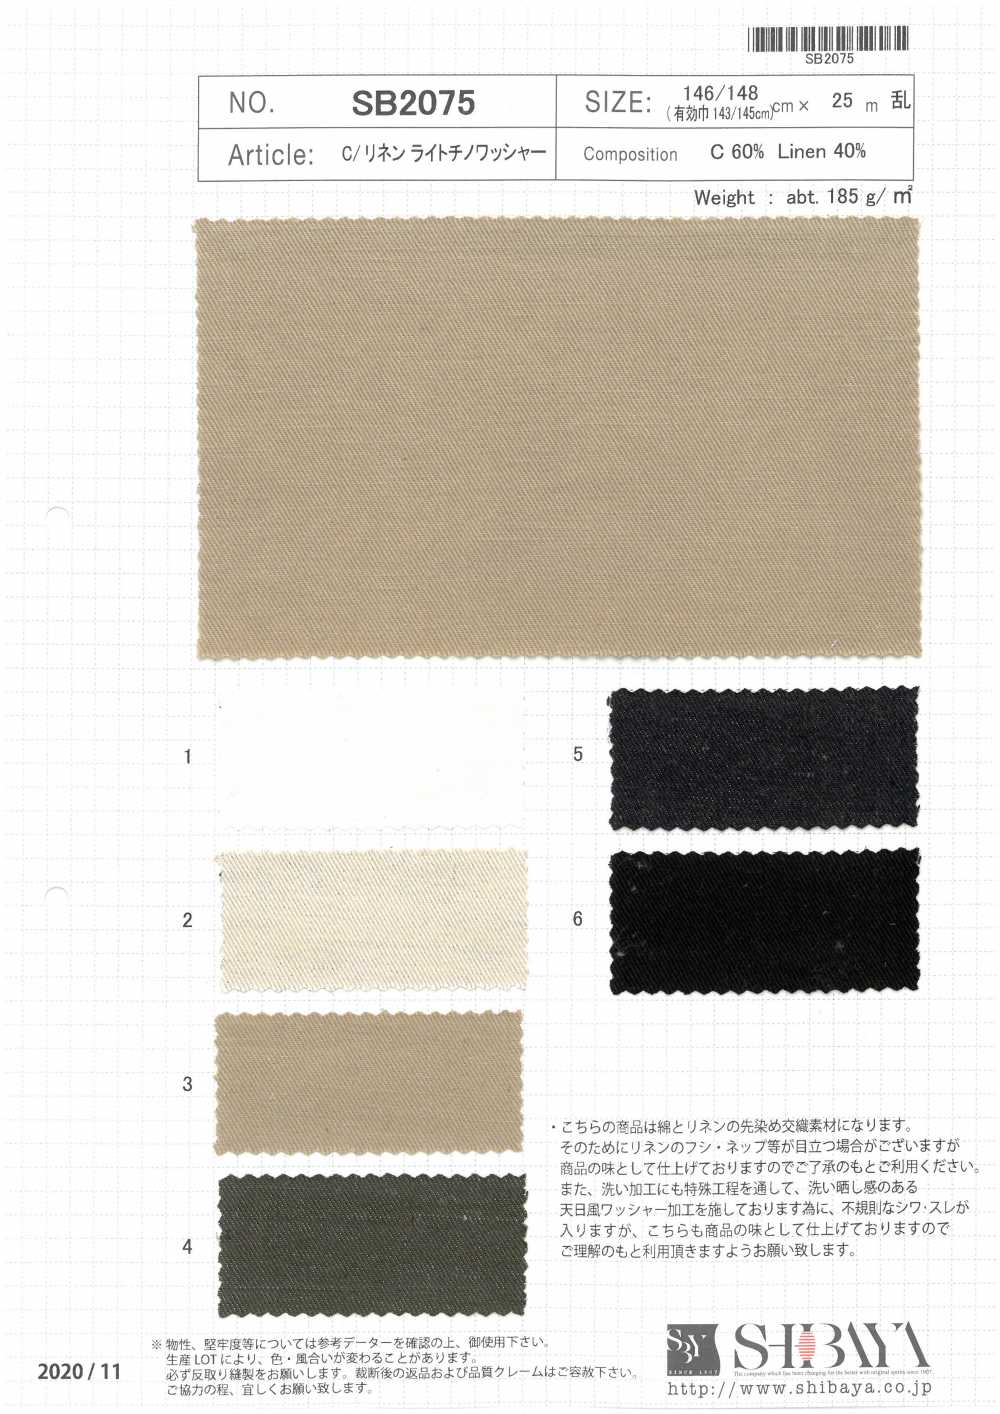 SB2075 C / Leinen Light Chino Washer Verarbeitung[Textilgewebe] SHIBAYA